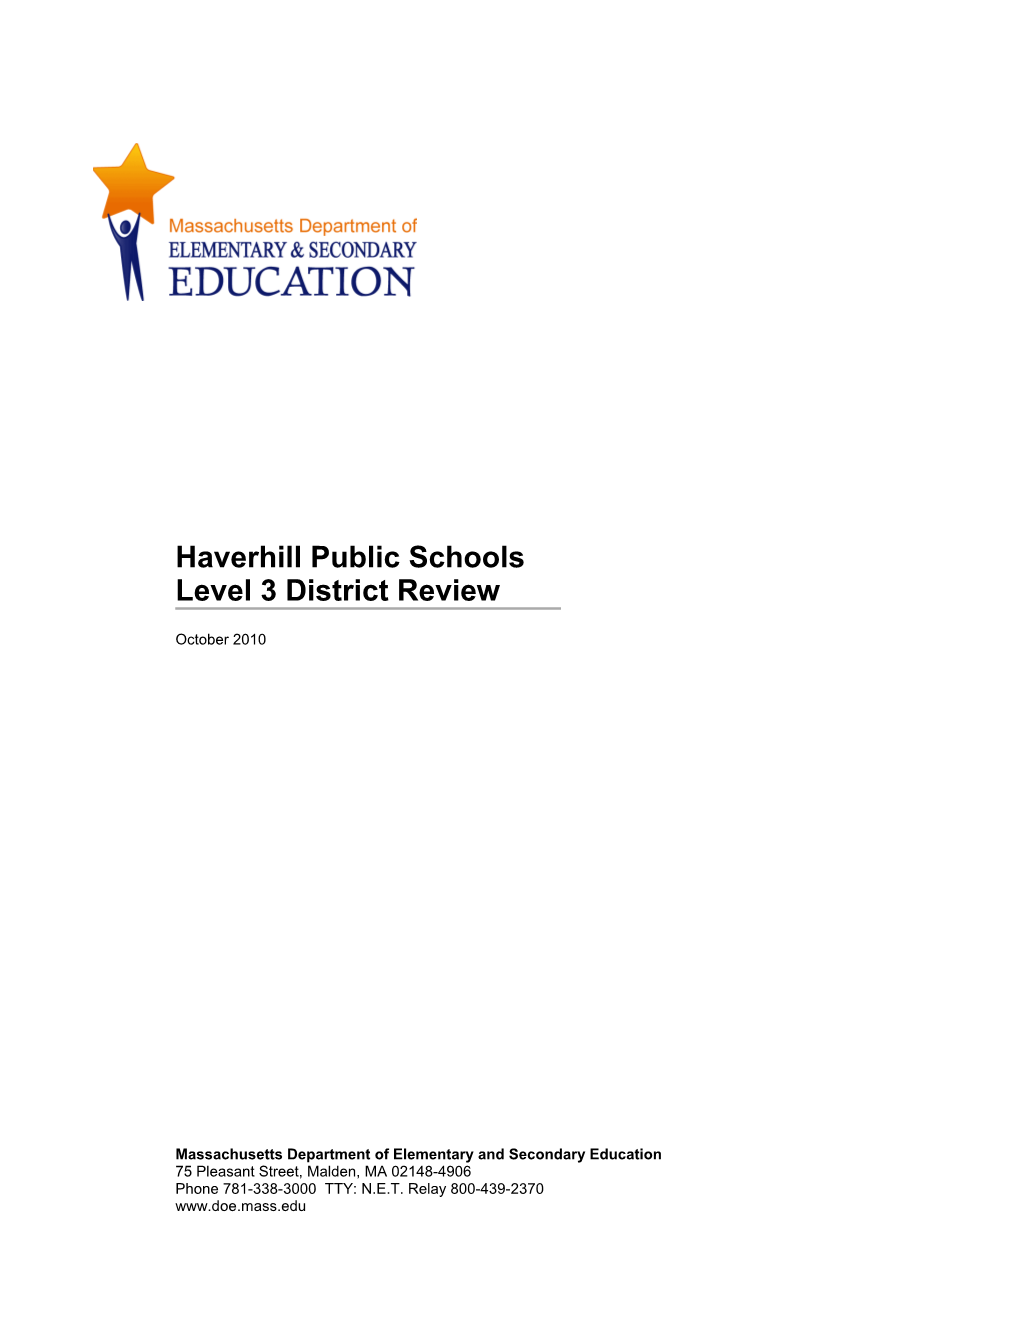 Haverhill Public Schools, Level 3 Review Report, October 2010